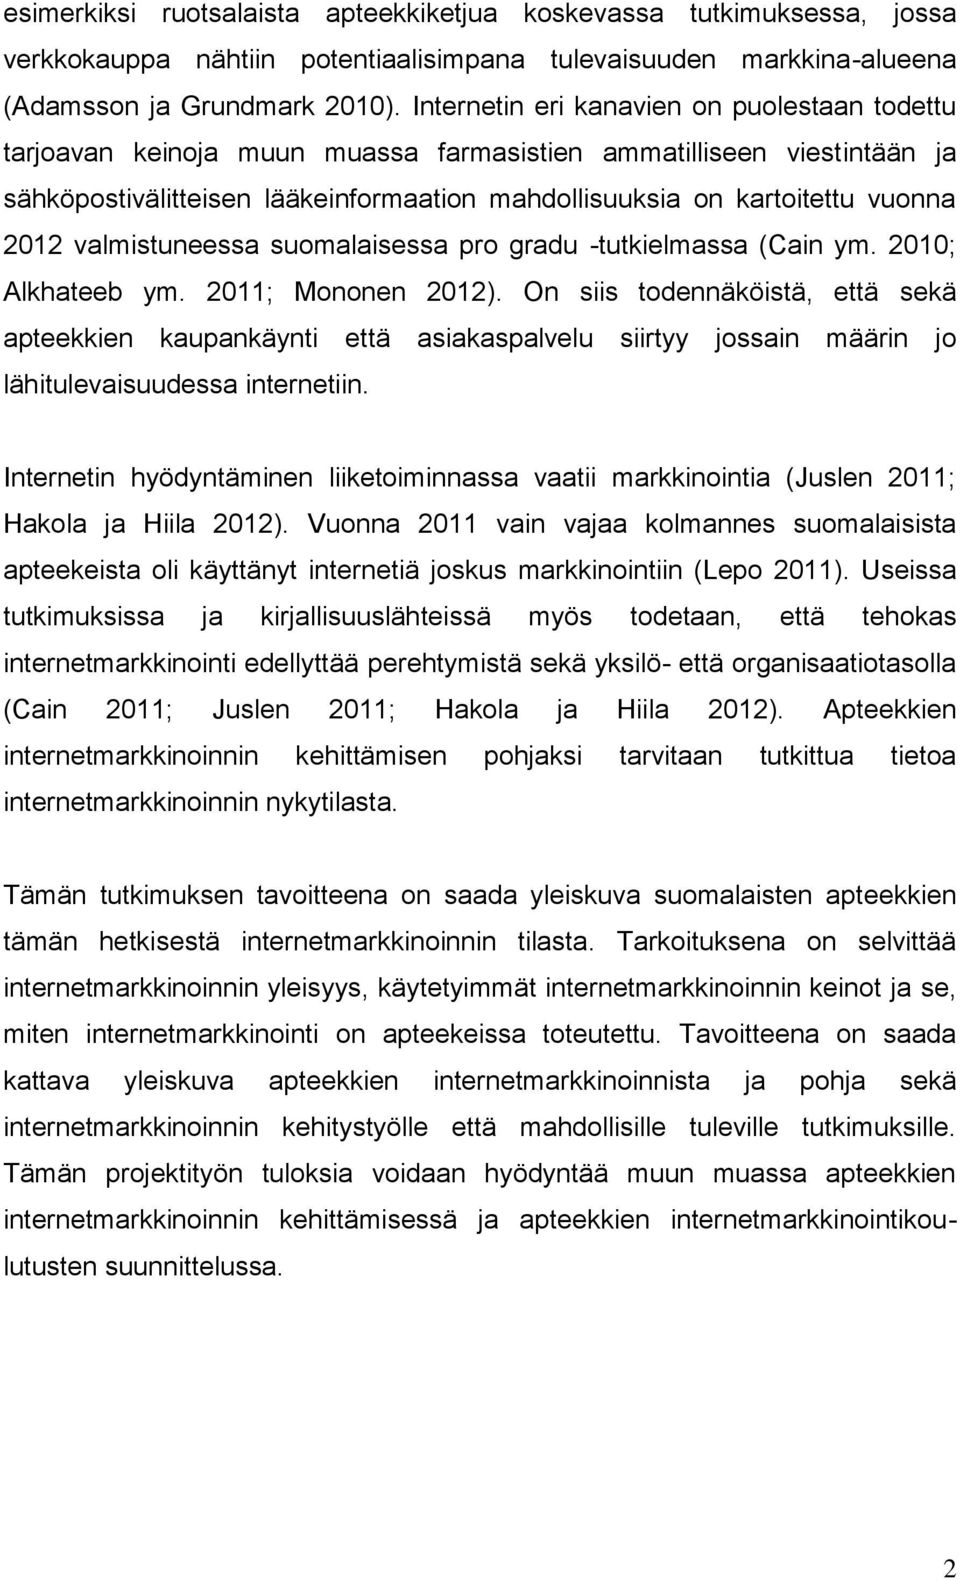 2012 valmistuneessa suomalaisessa pro gradu -tutkielmassa (Cain ym. 2010; Alkhateeb ym. 2011; Mononen 2012).